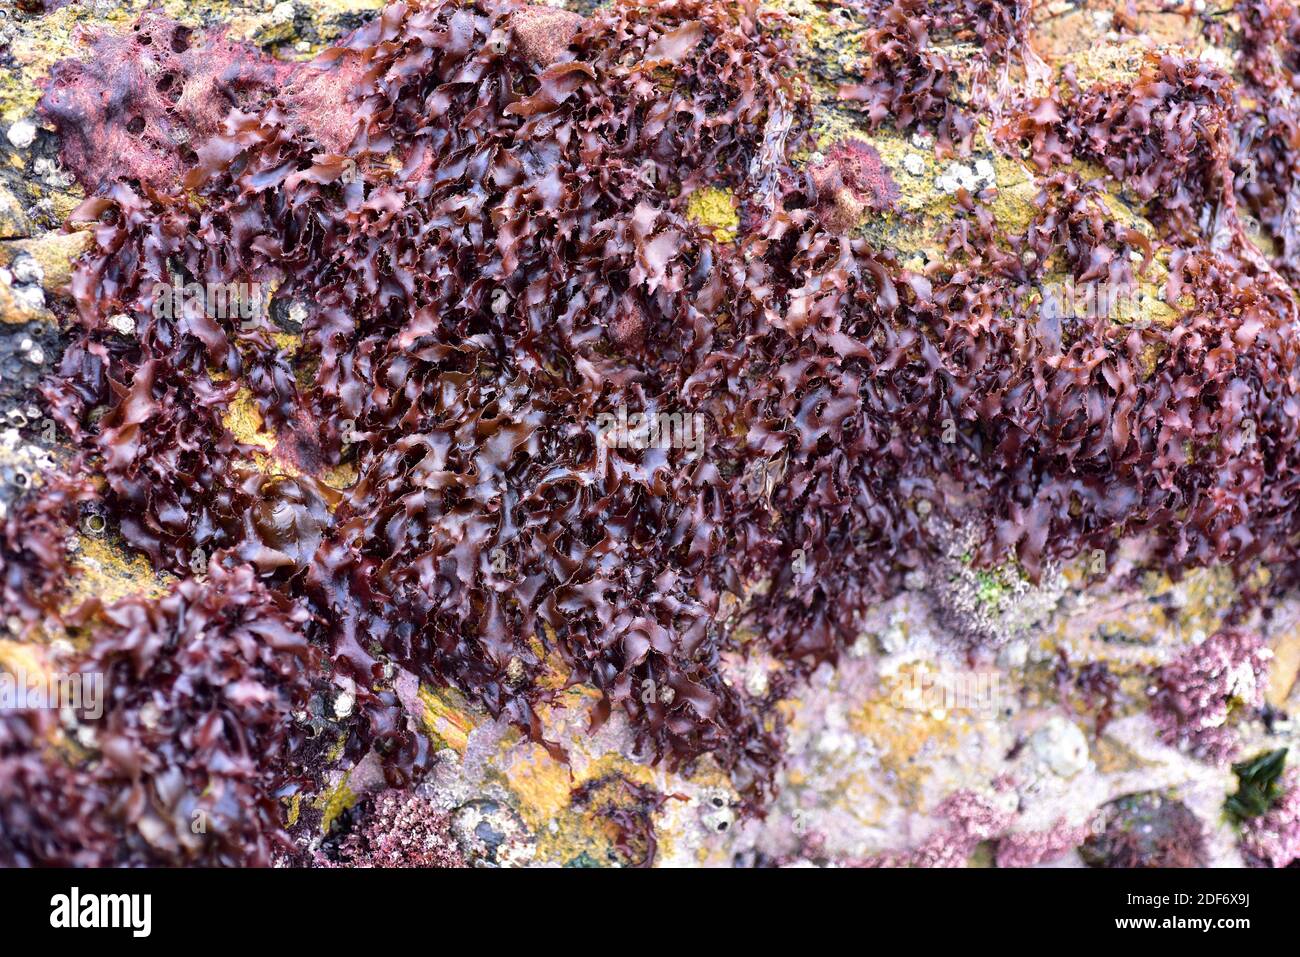 Rissoella verruculosa es una alga roja laminar. Esta foto fue tomada en Sa Tuna, provincia de Girona, Cataluña, España. Foto de stock